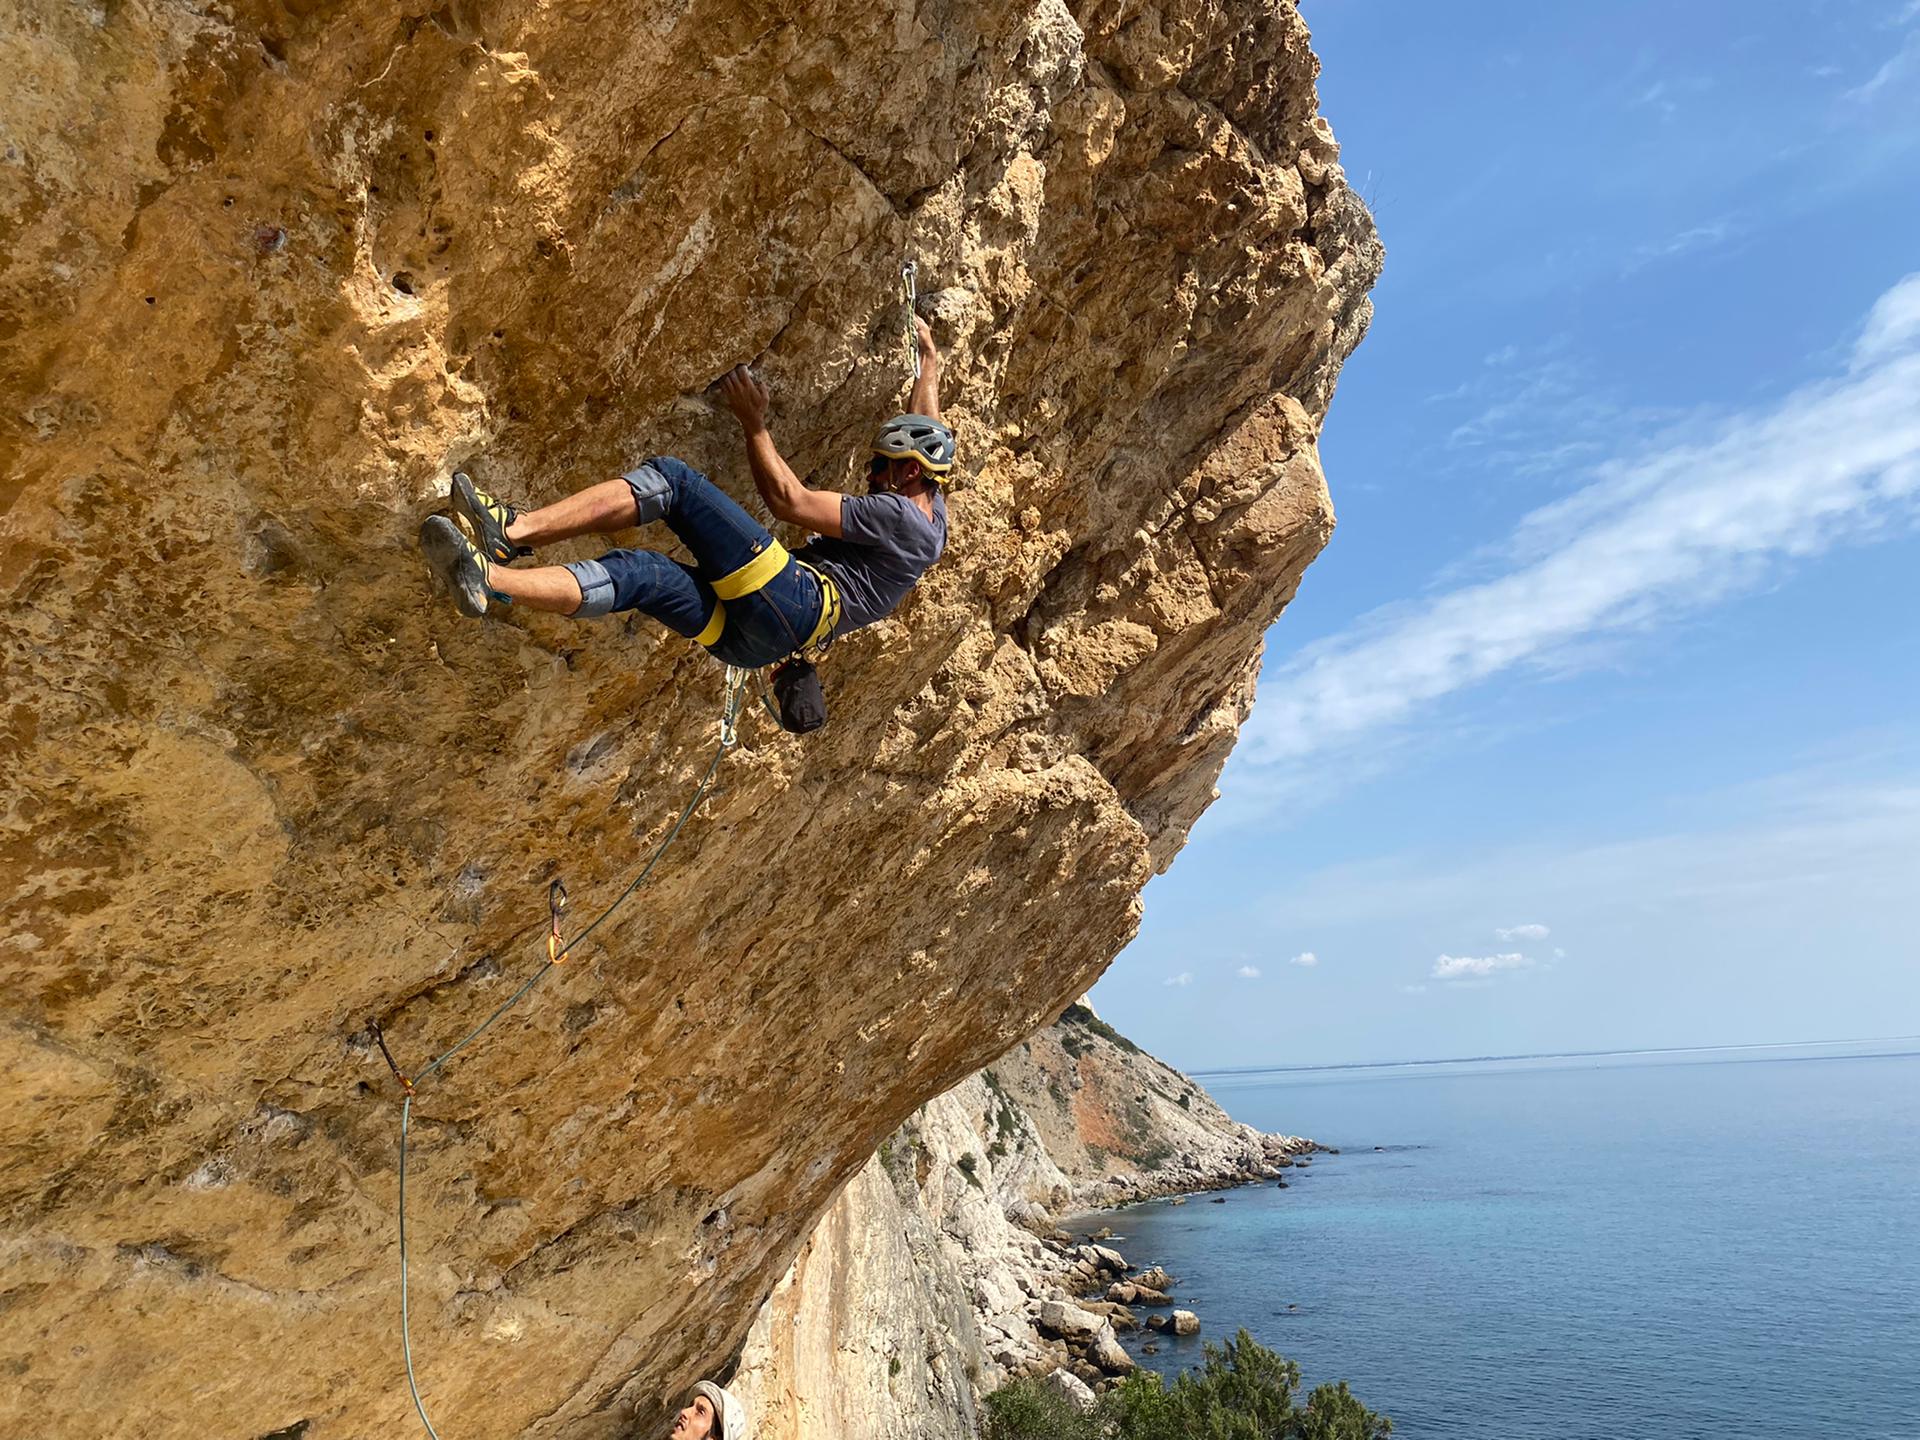 Share for Bolts partner Filipe che scala nel Portogallo occidentale